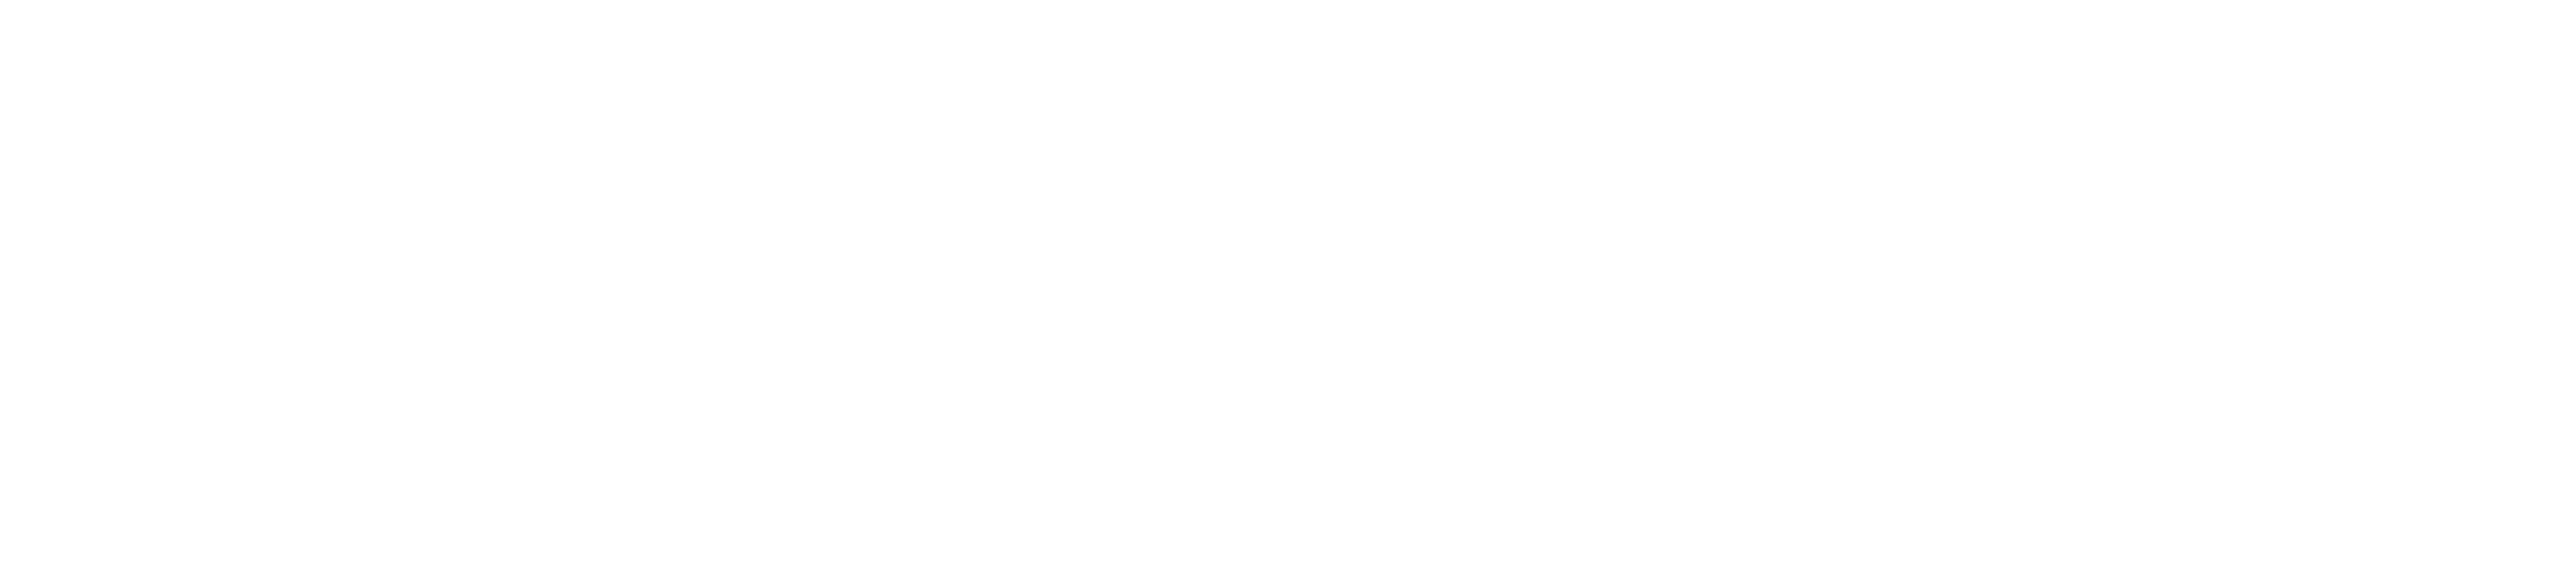 Girardi Sports